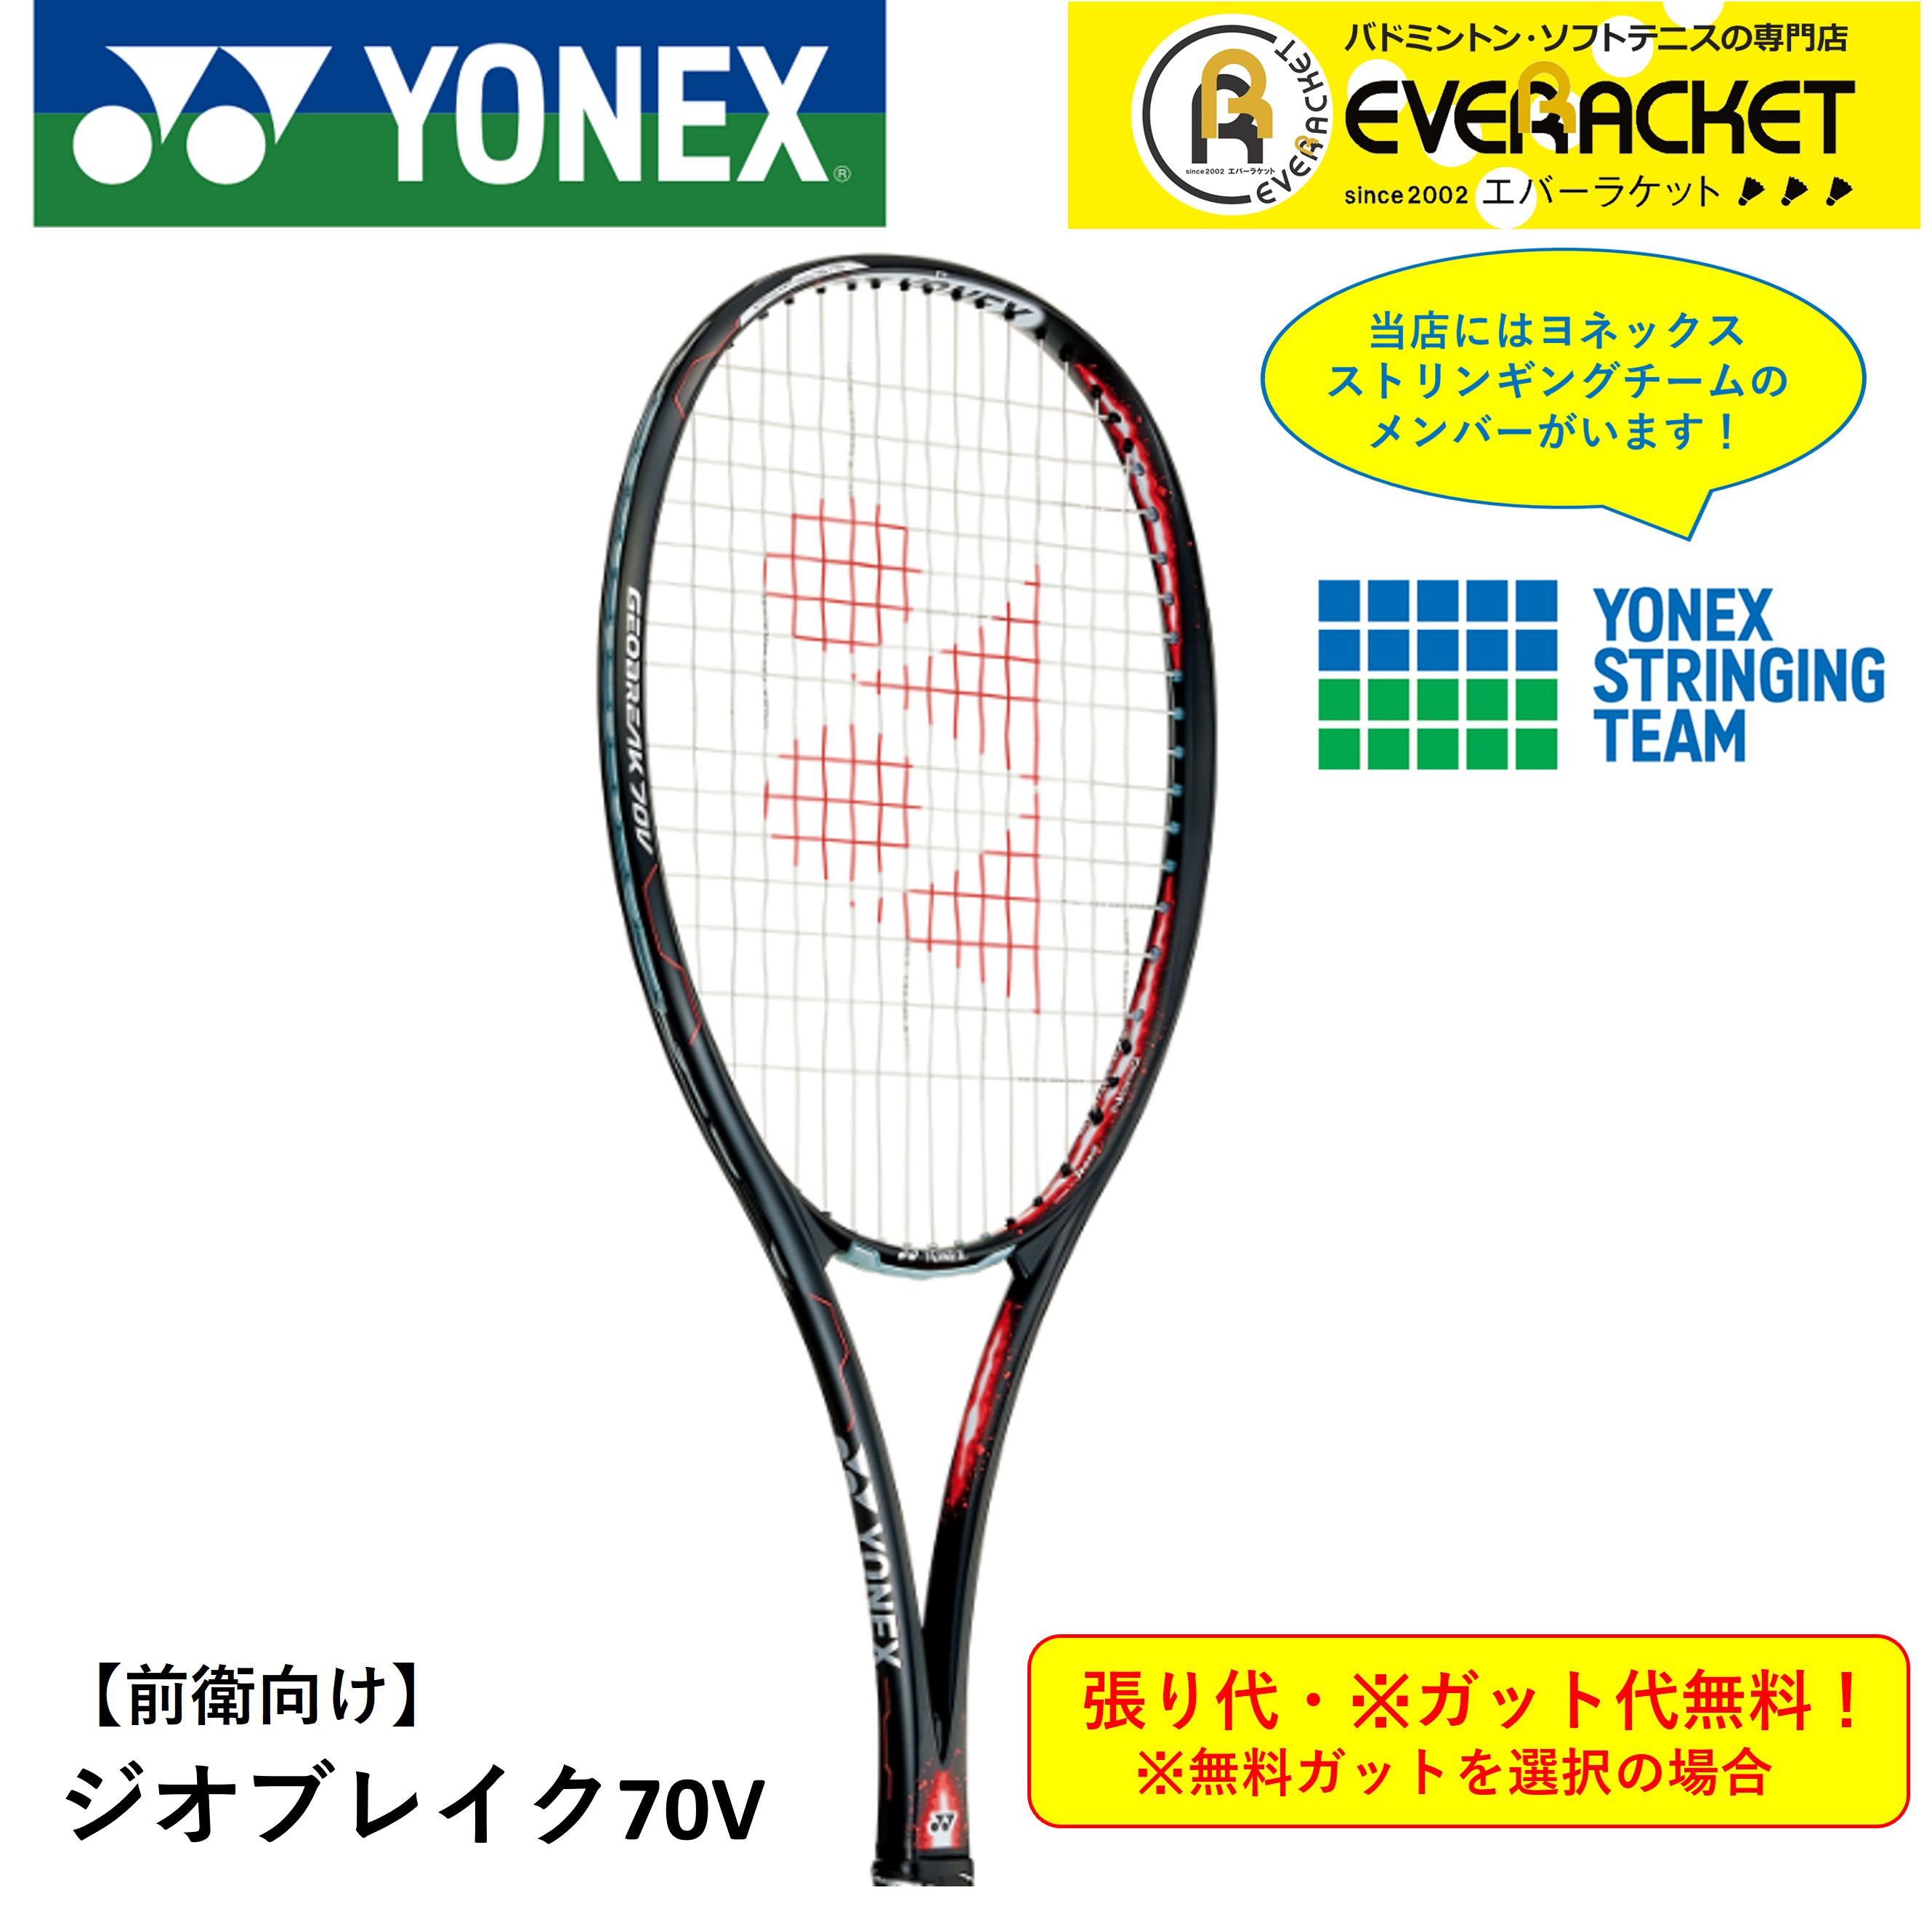 再追加販売 YONEX ヨネックス YONEX GEO70V ジオブレイク70V